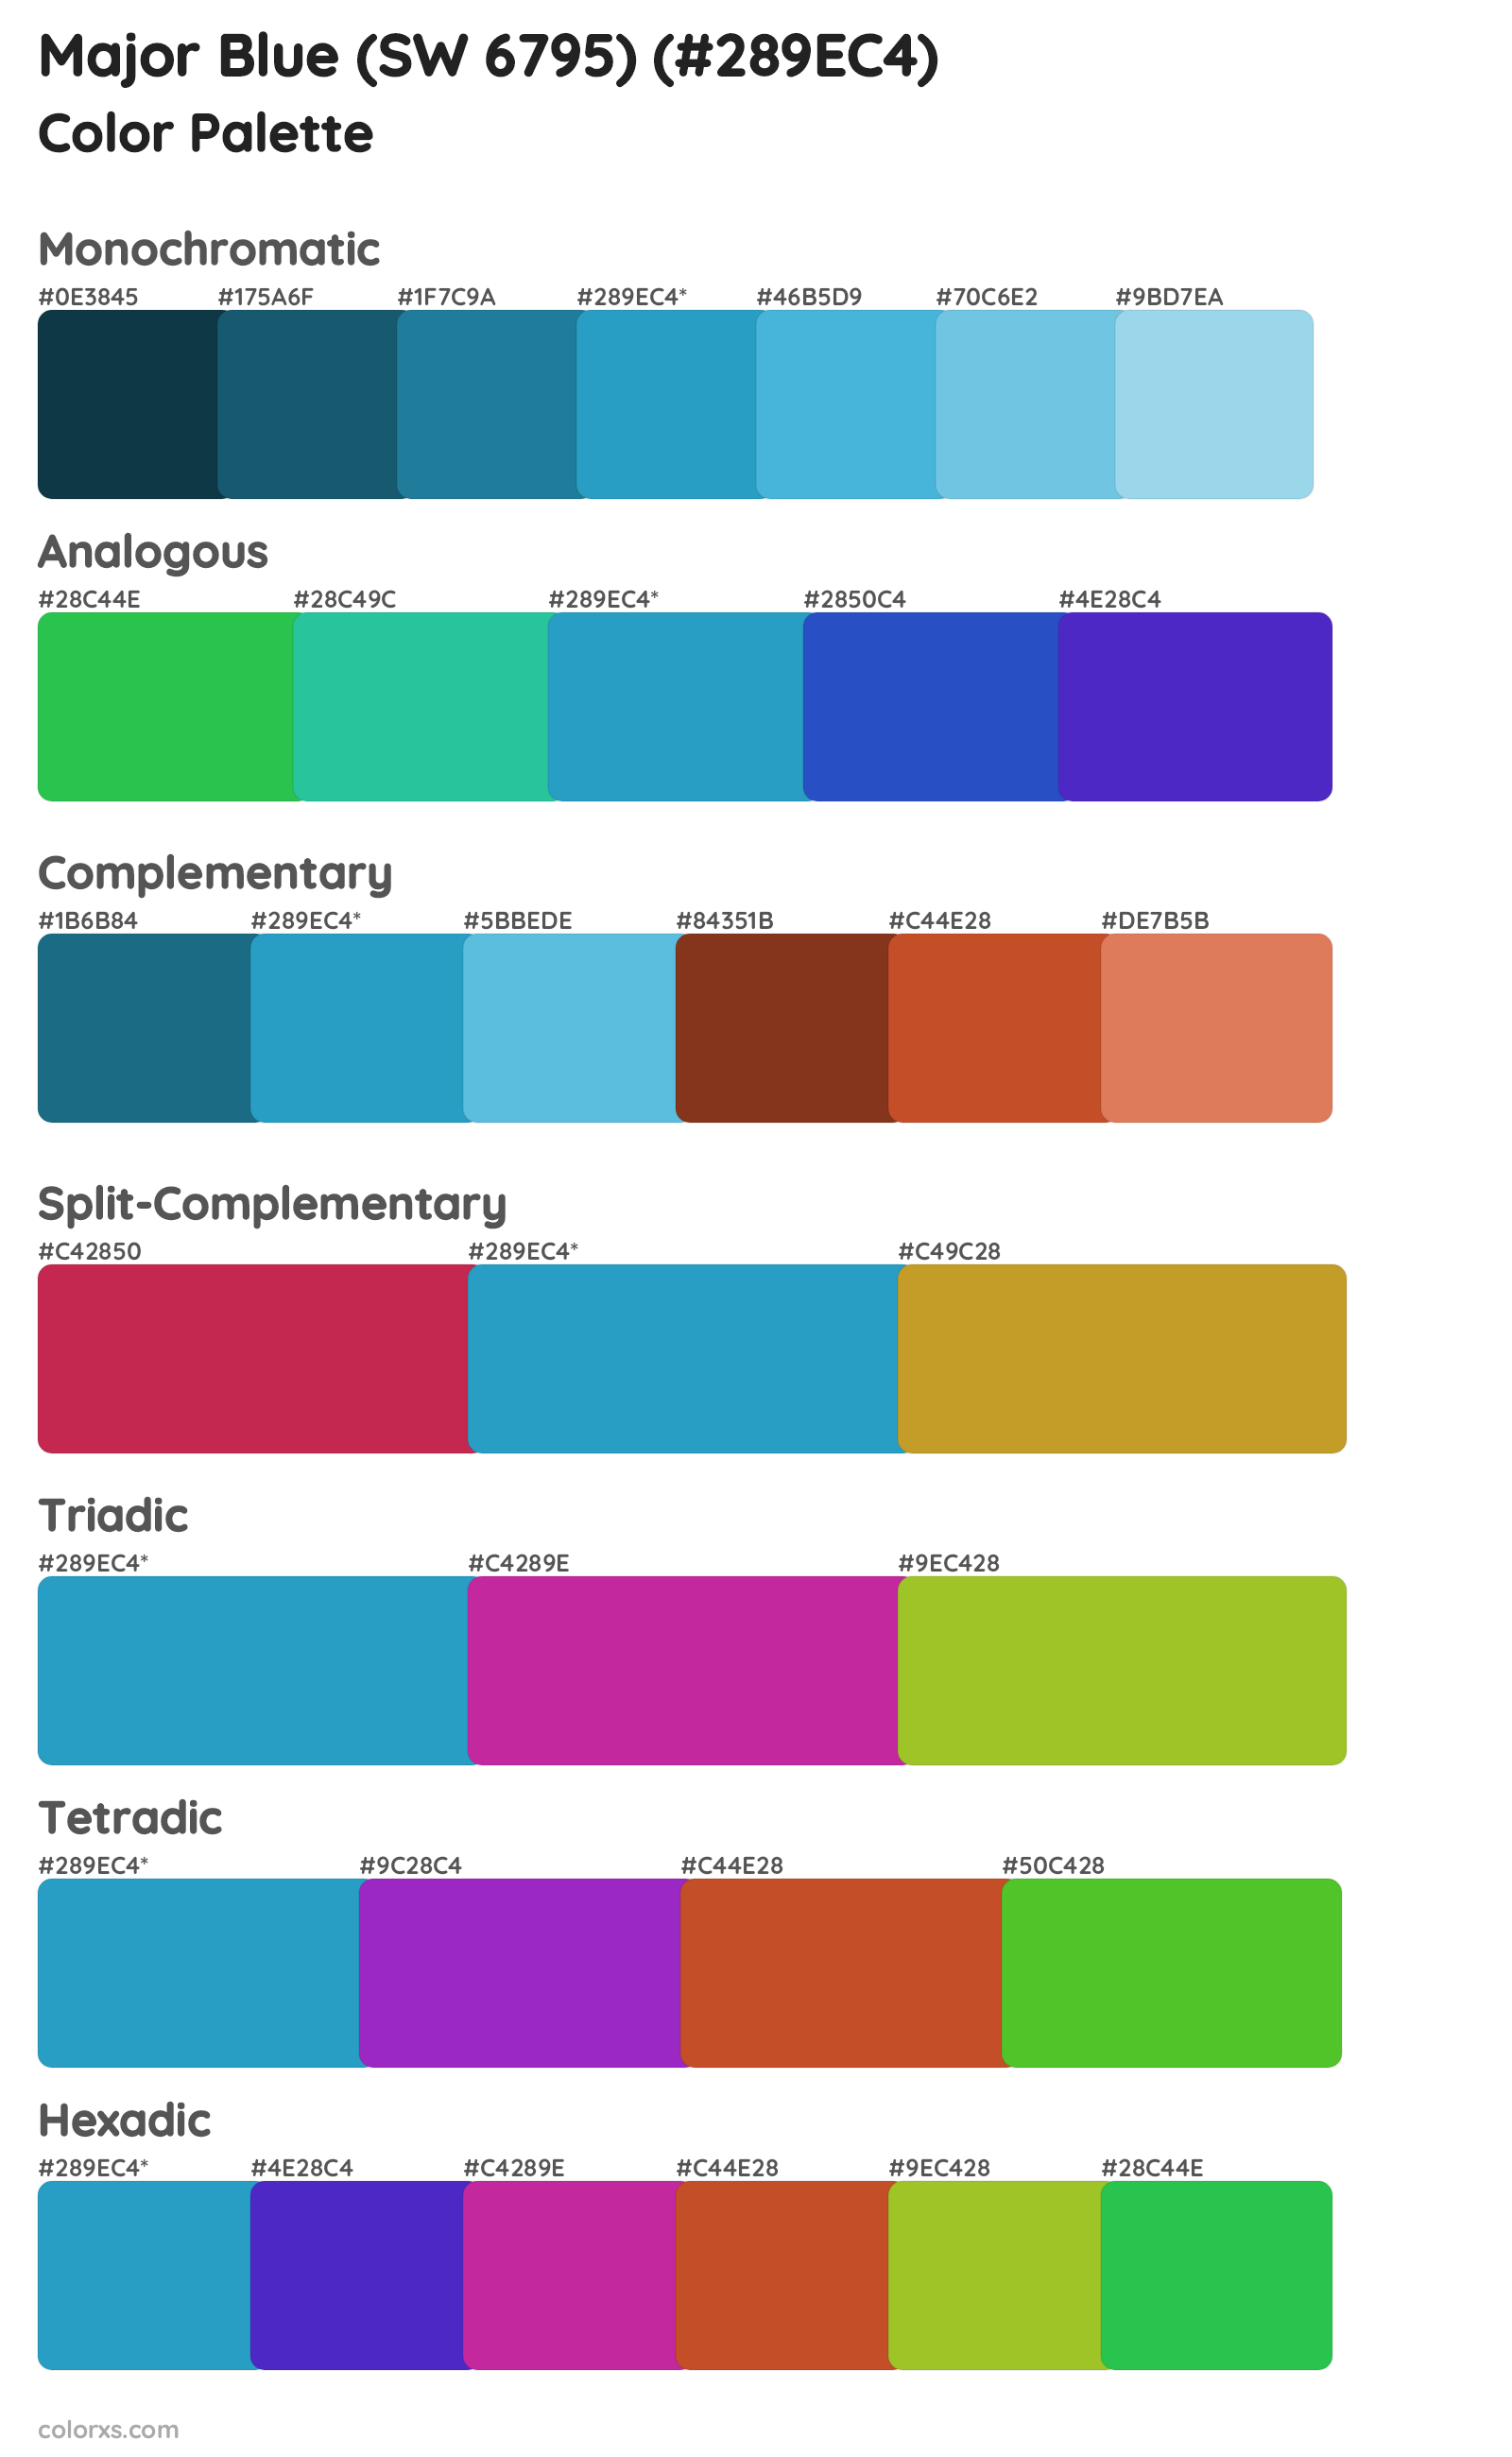 Major Blue (SW 6795) Color Scheme Palettes